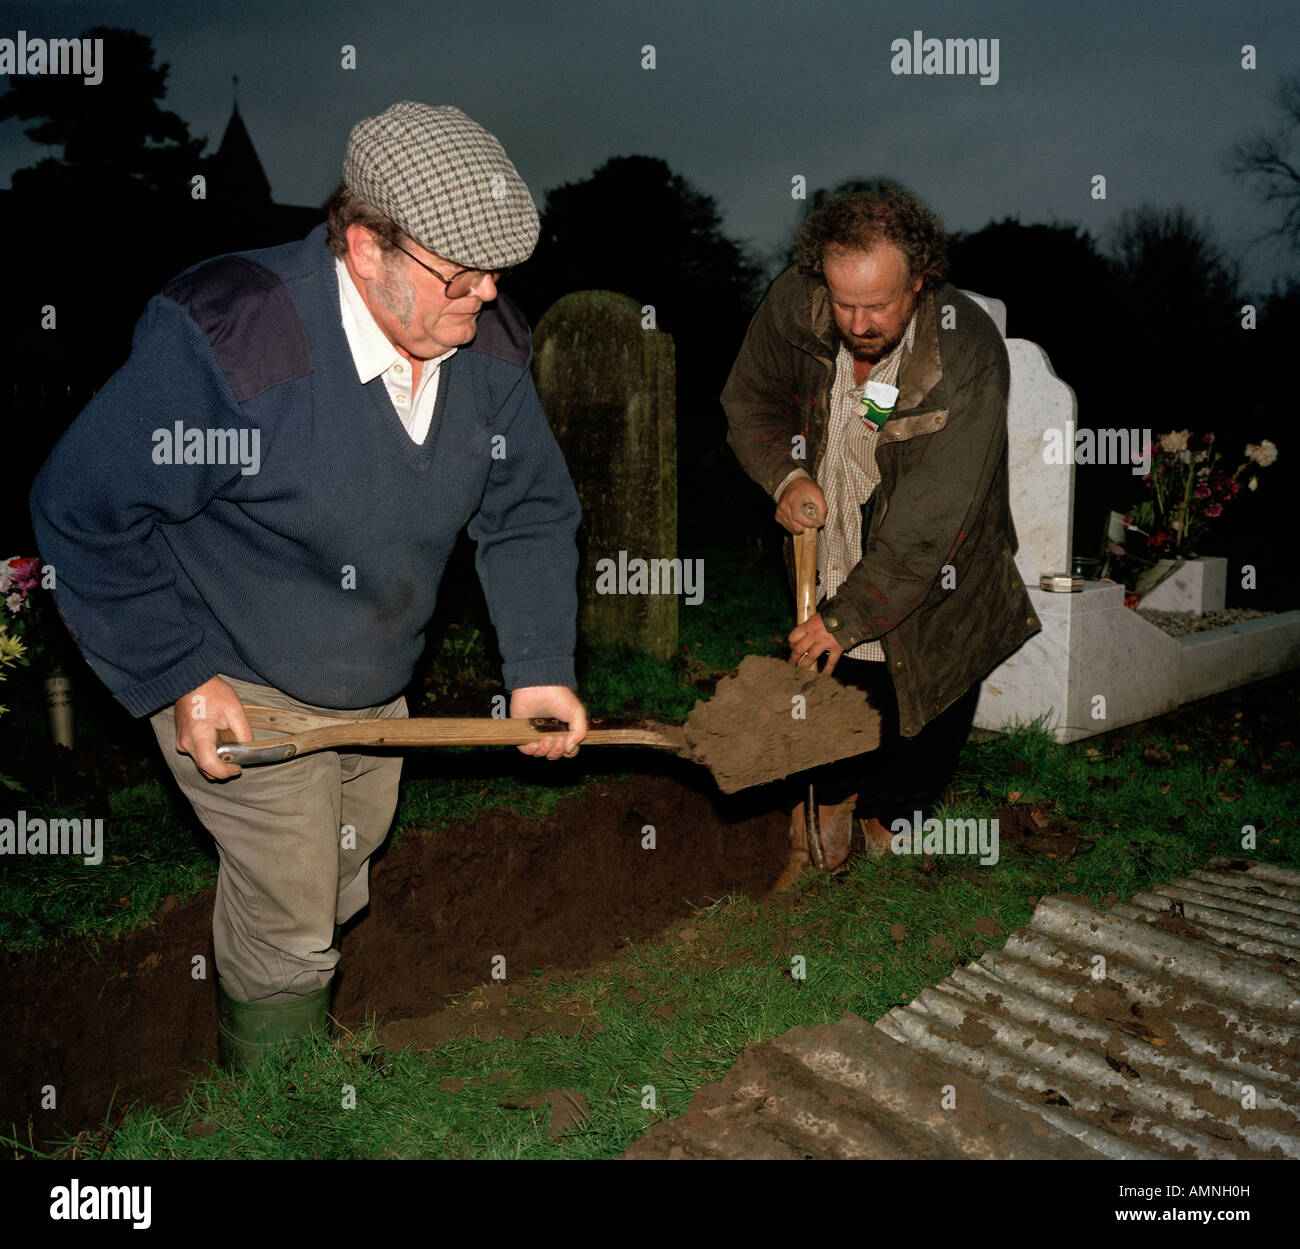 Totengräber ein neues Grab schaufeln Stockfotografie - Alamy